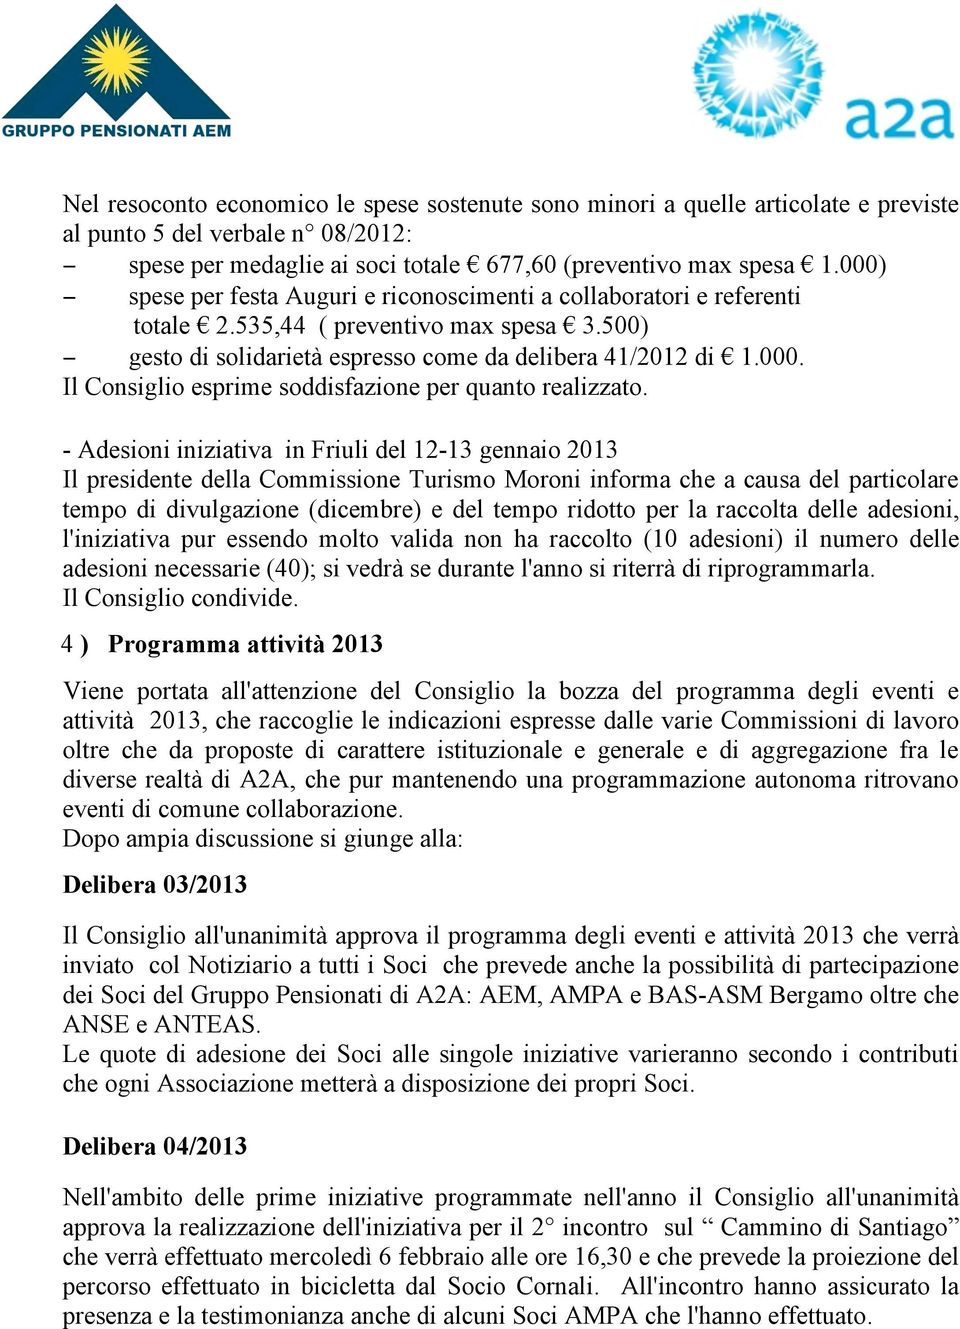 - Adesioni iniziativa in Friuli del 12-13 gennaio 2013 Il presidente della Commissione Turismo Moroni informa che a causa del particolare tempo di divulgazione (dicembre) e del tempo ridotto per la